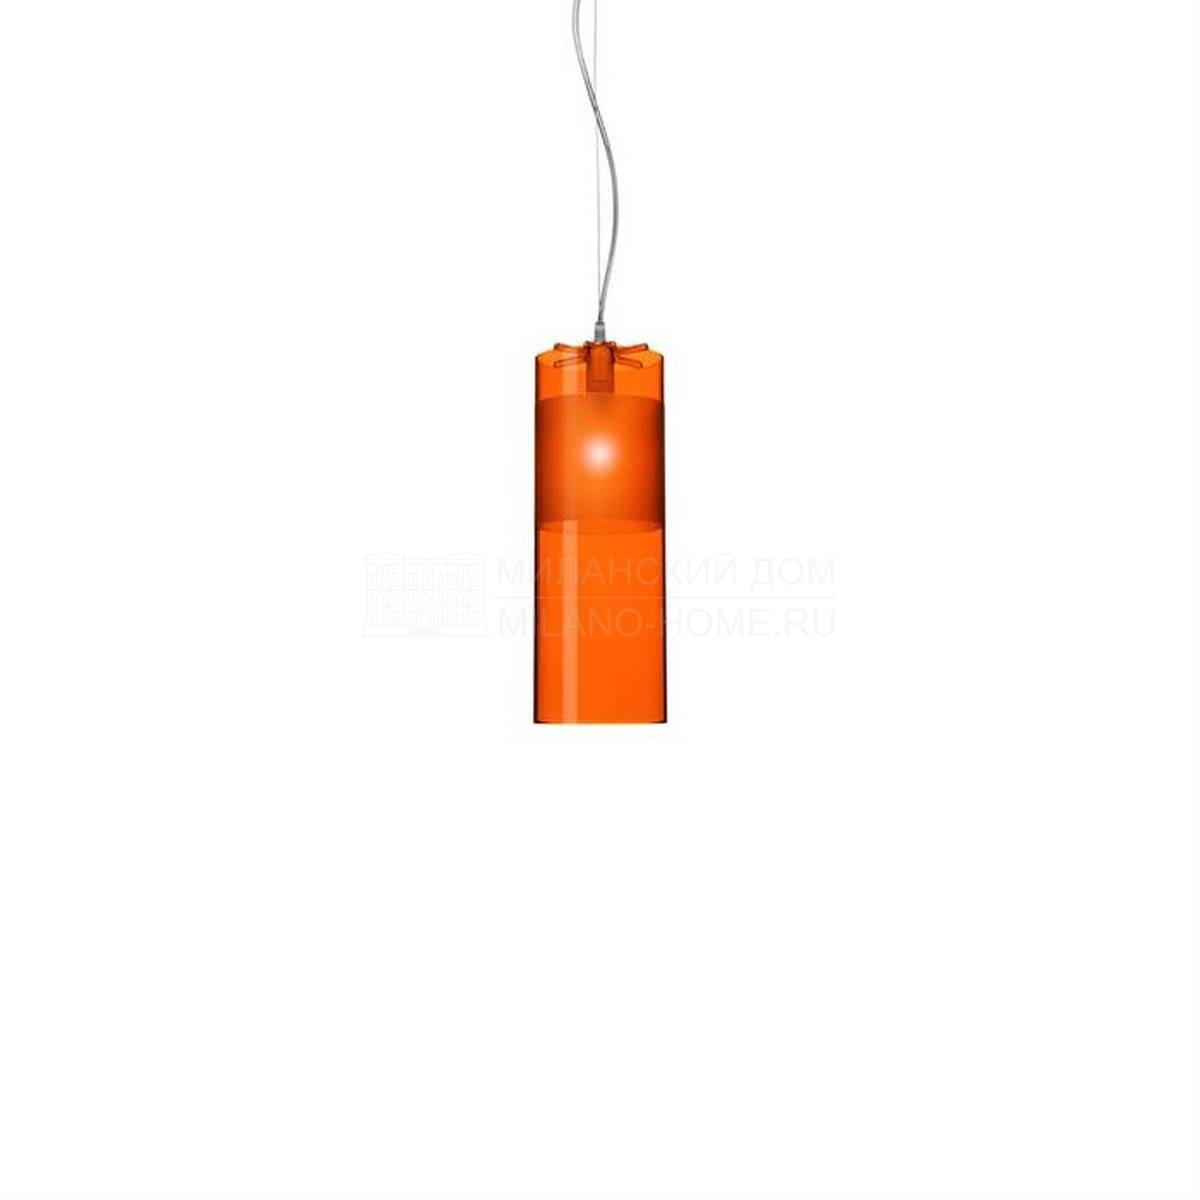 Подвесной светильник Easy из Италии фабрики KARTELL